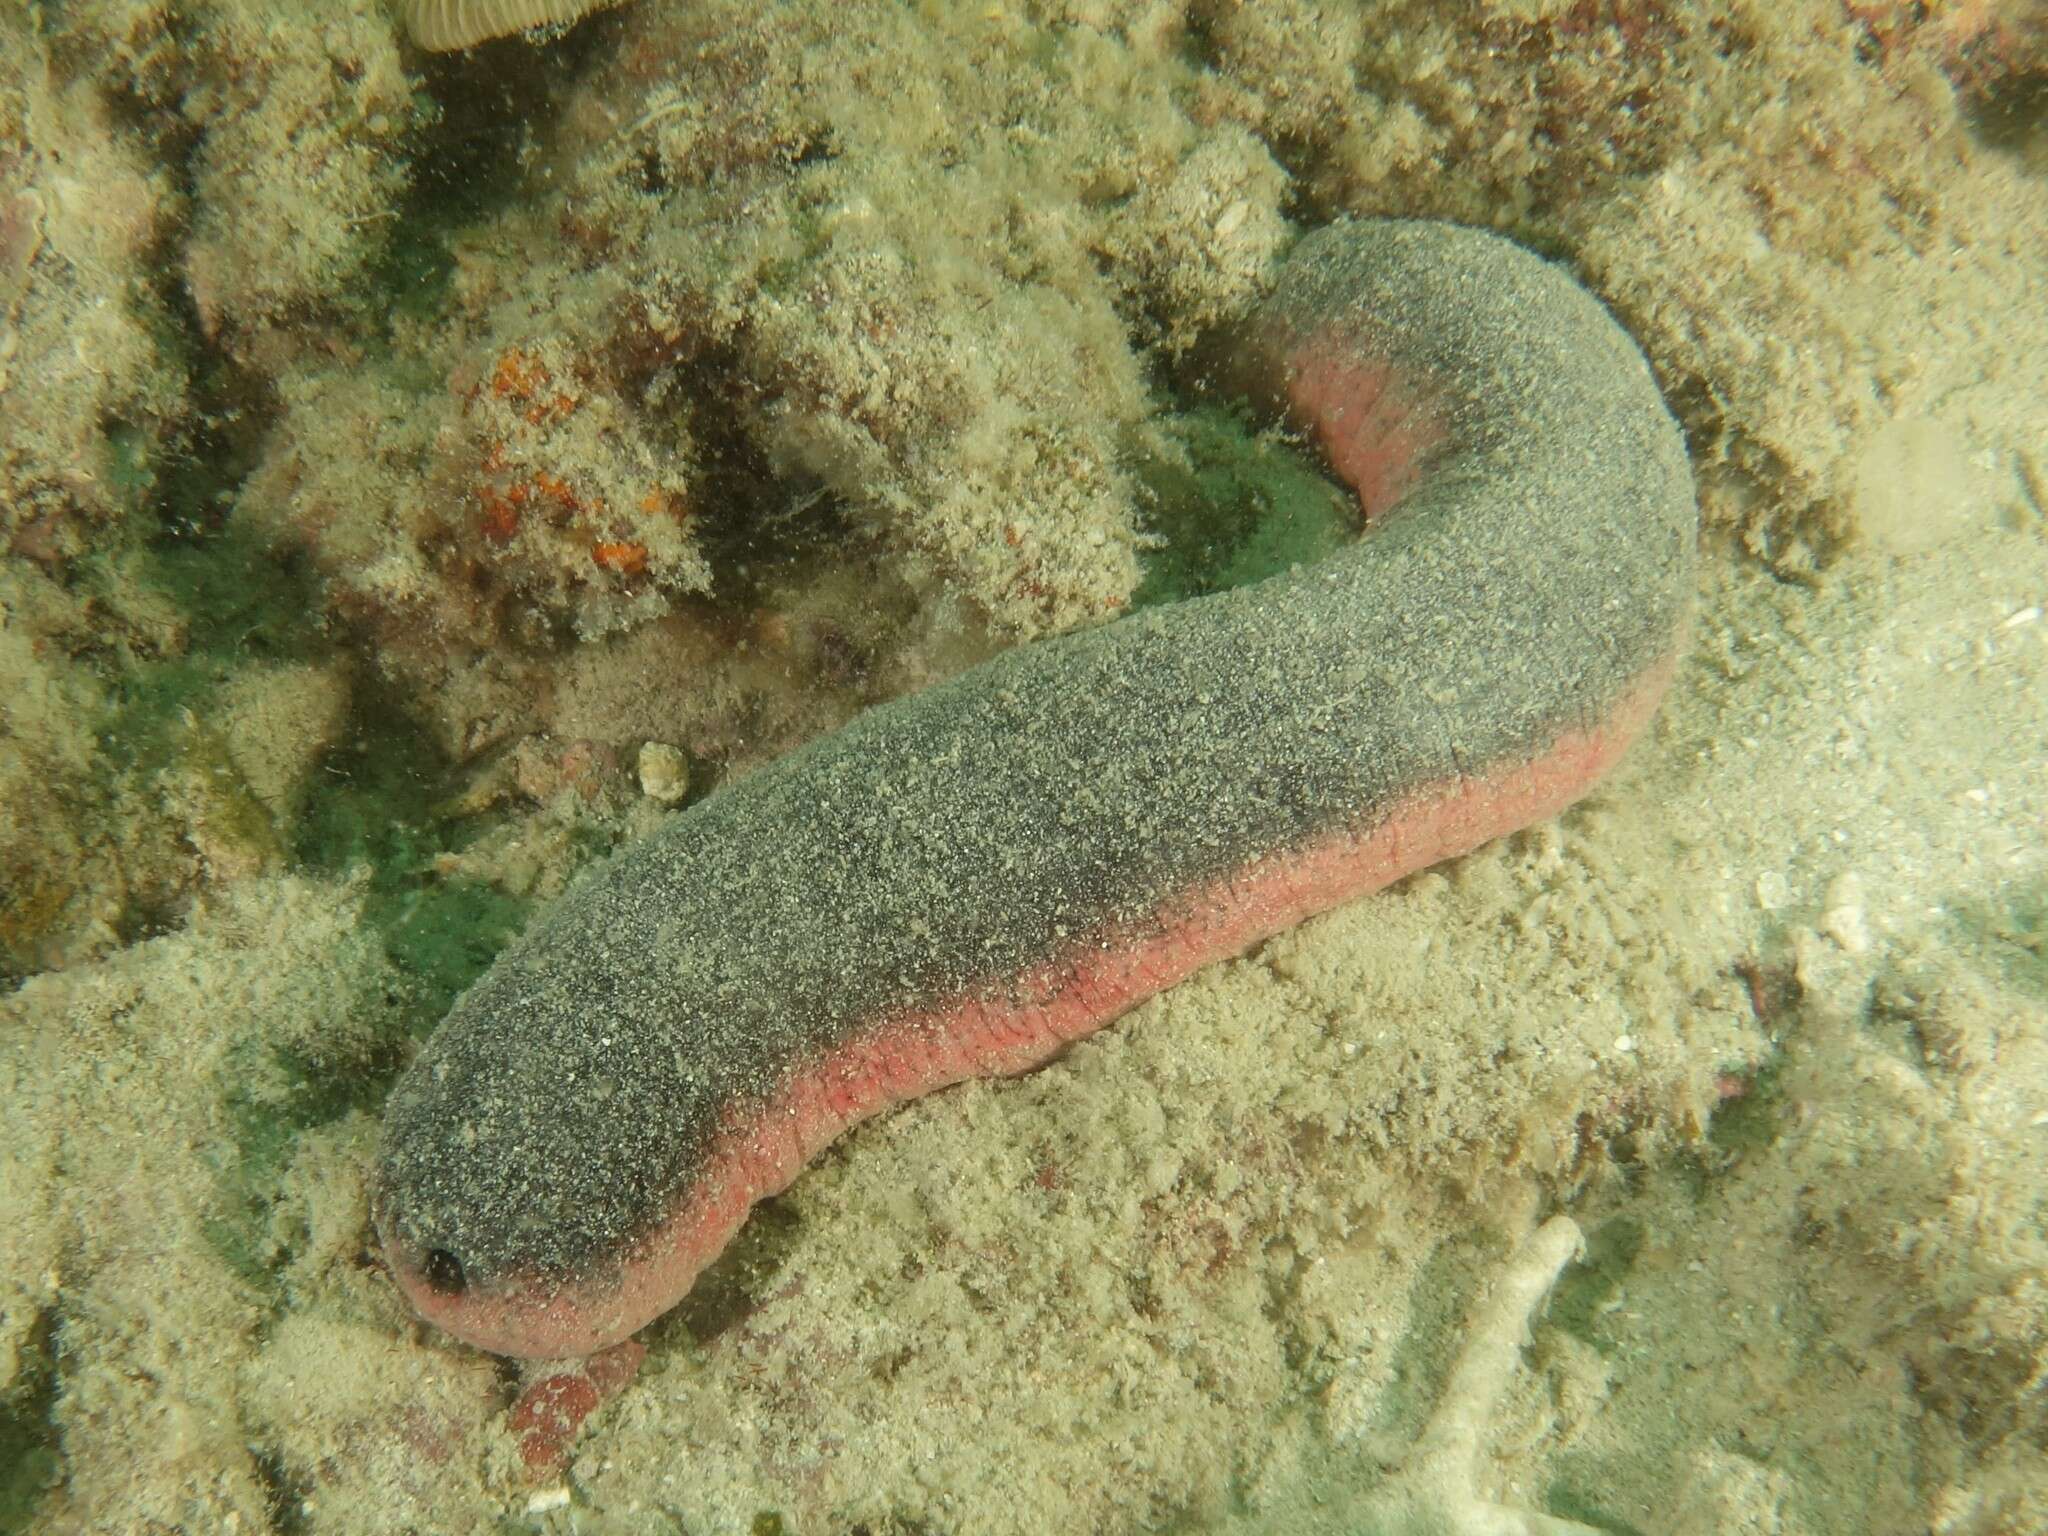 Image of Pinkfish